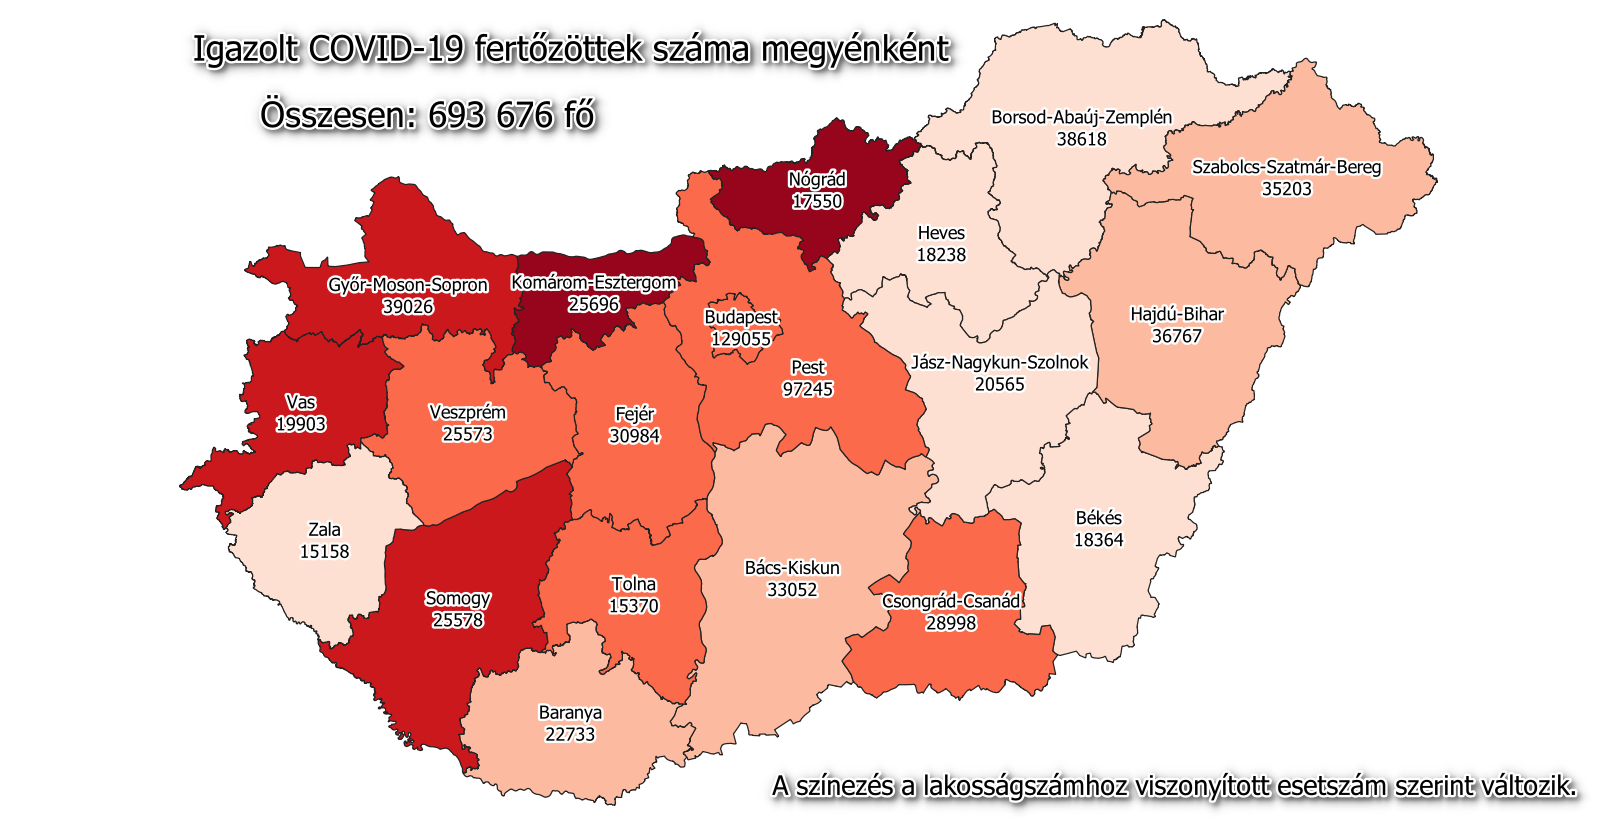 فيروس كورونا خريطة المجر